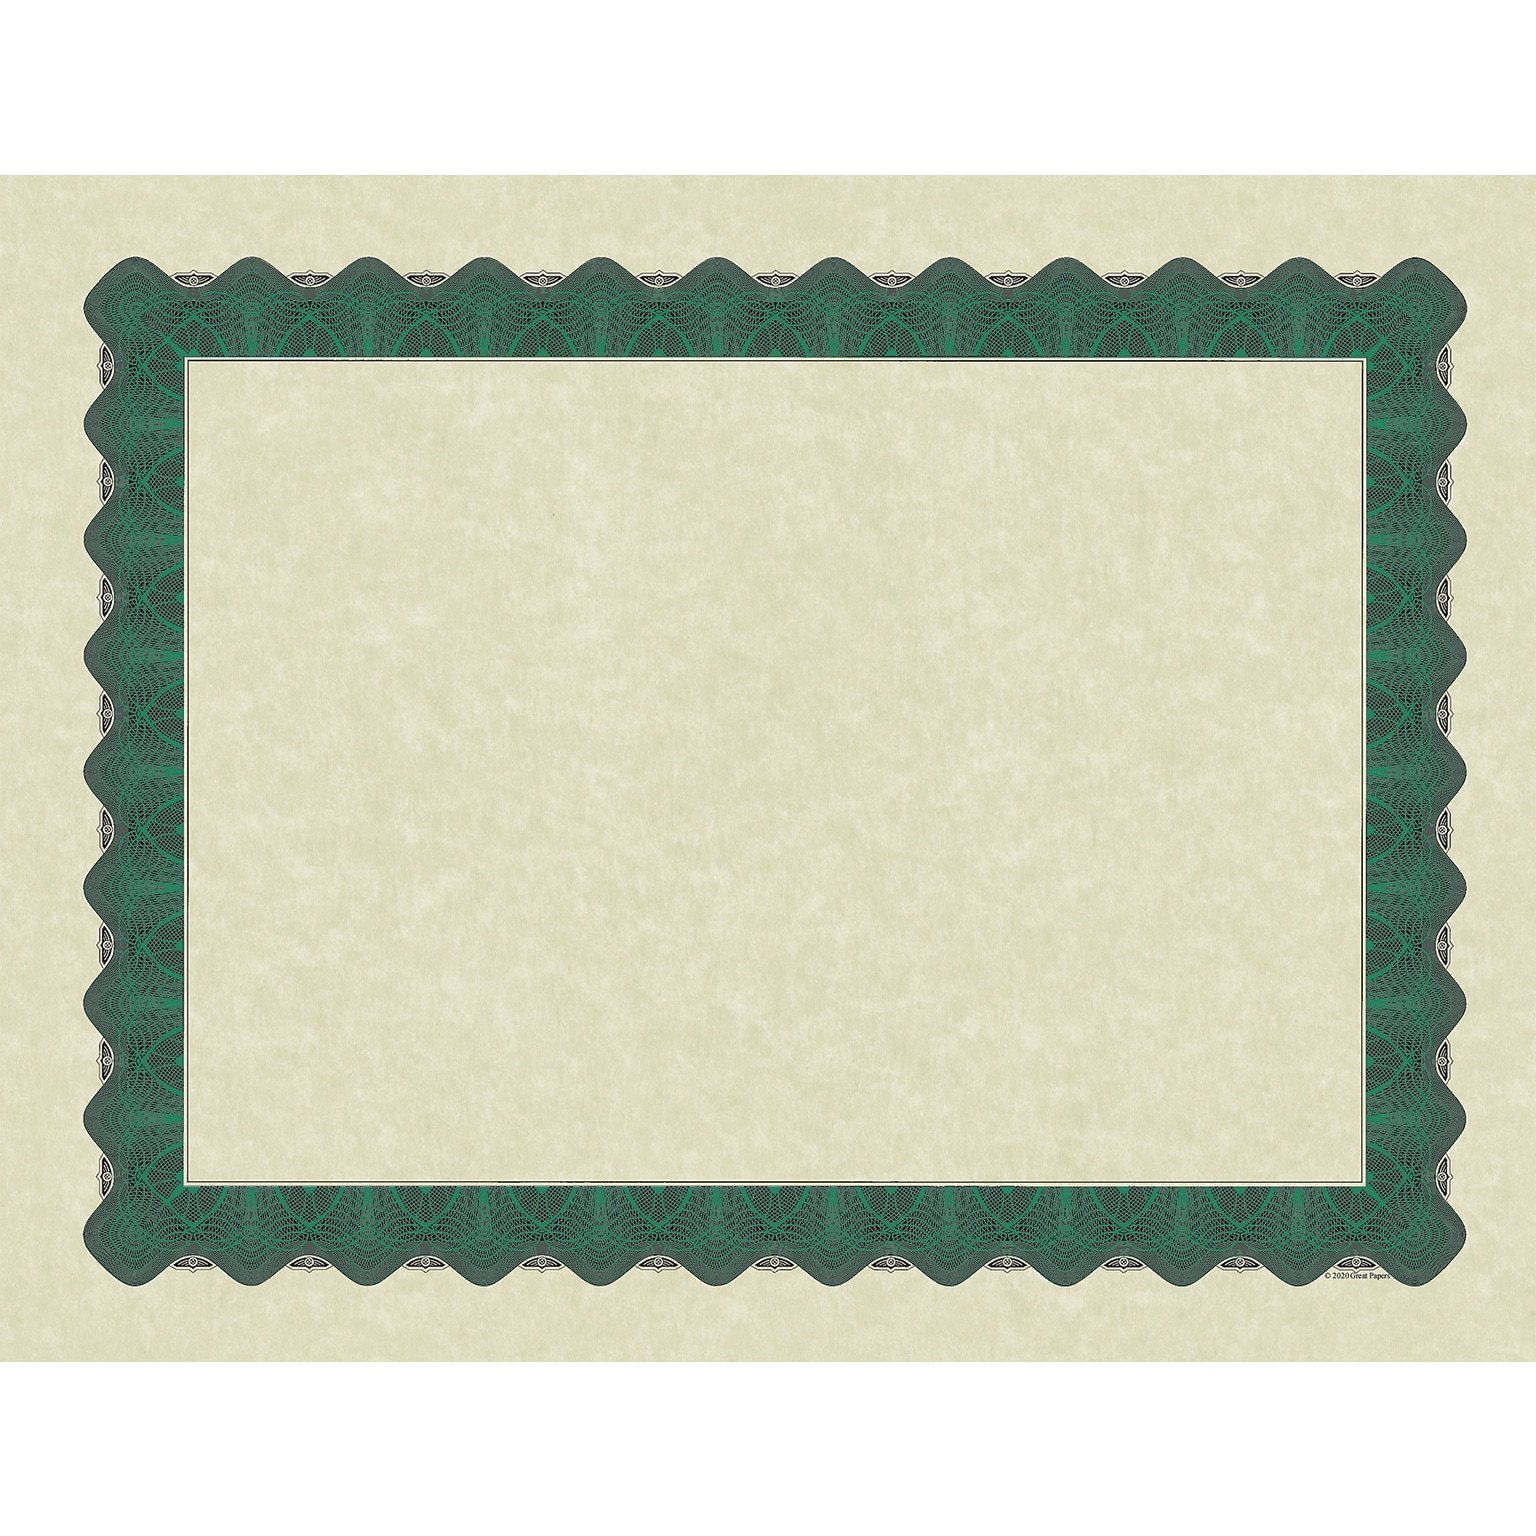 Great Papers Metallic Certificates, 8.5 x 11, Beige/Green, 100/Pack (934200)